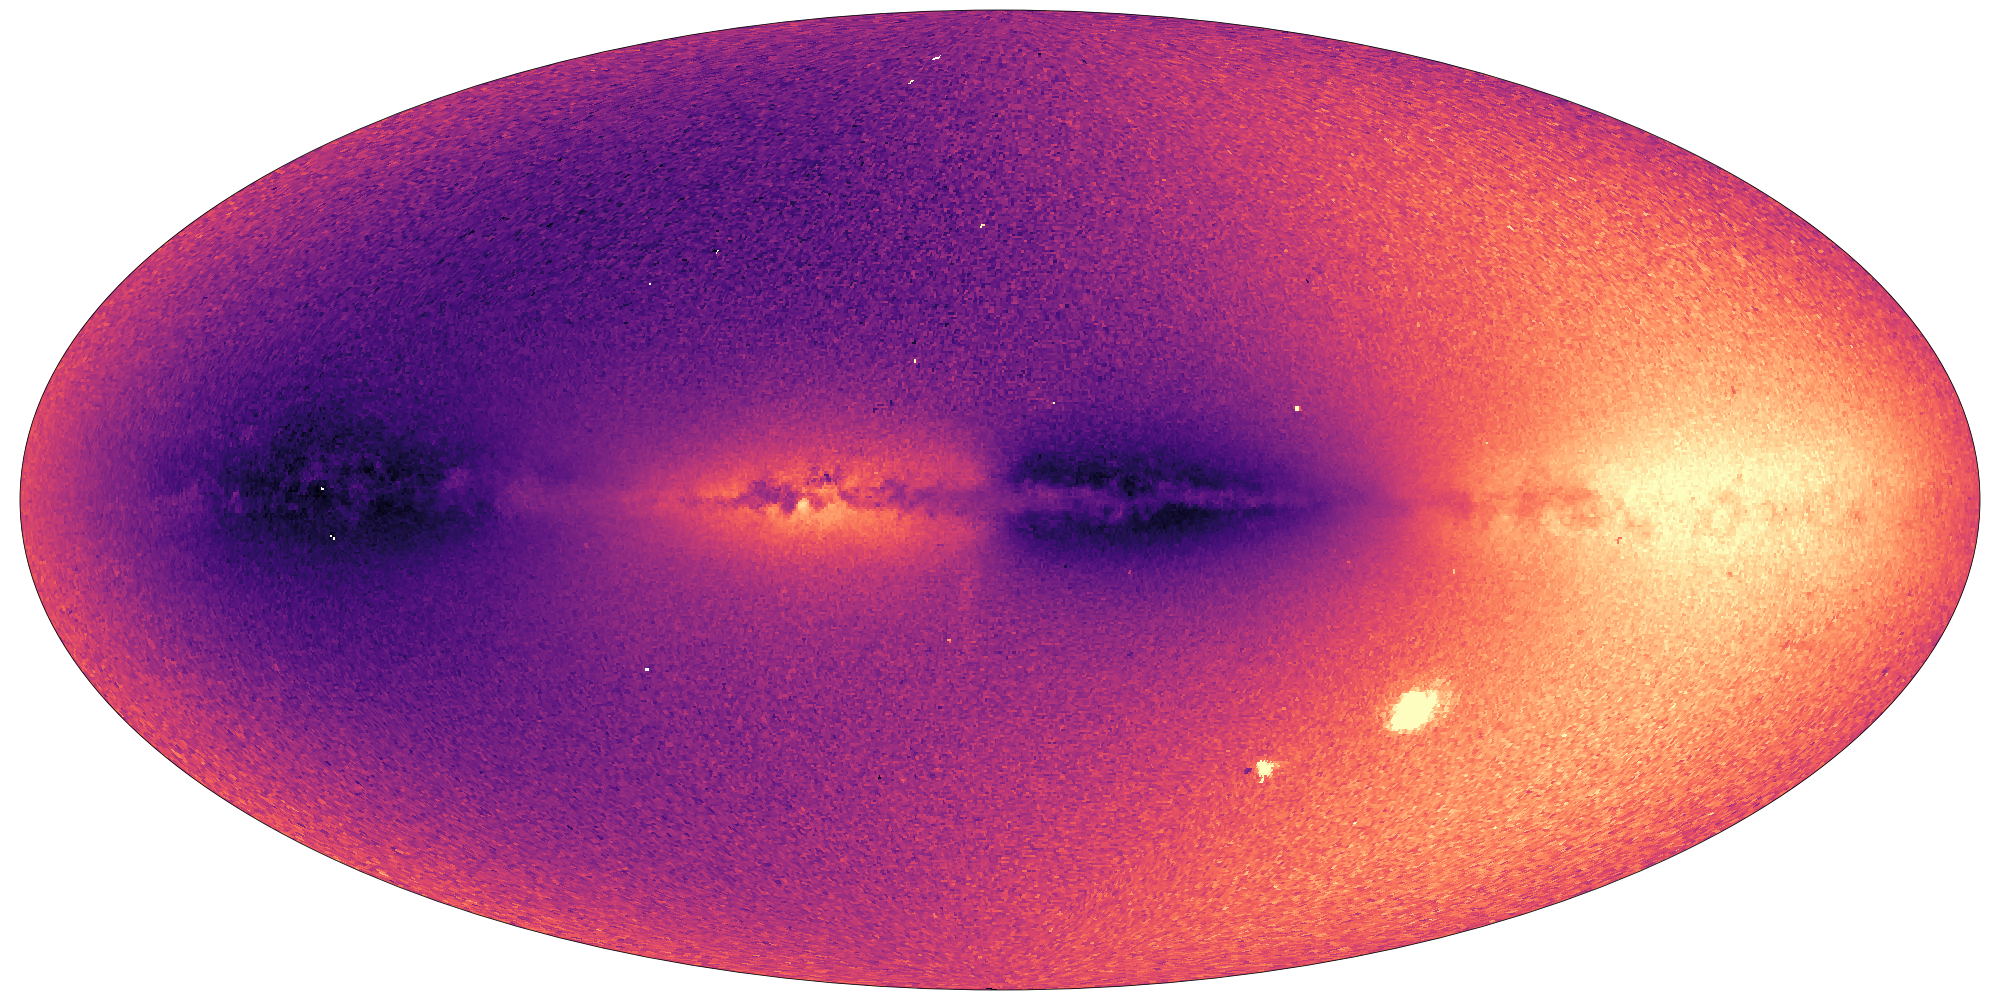 Elkészült a Tejútrendszer eddigi legpontosabb térképe, amely a galaxis történetéről is árulkodik